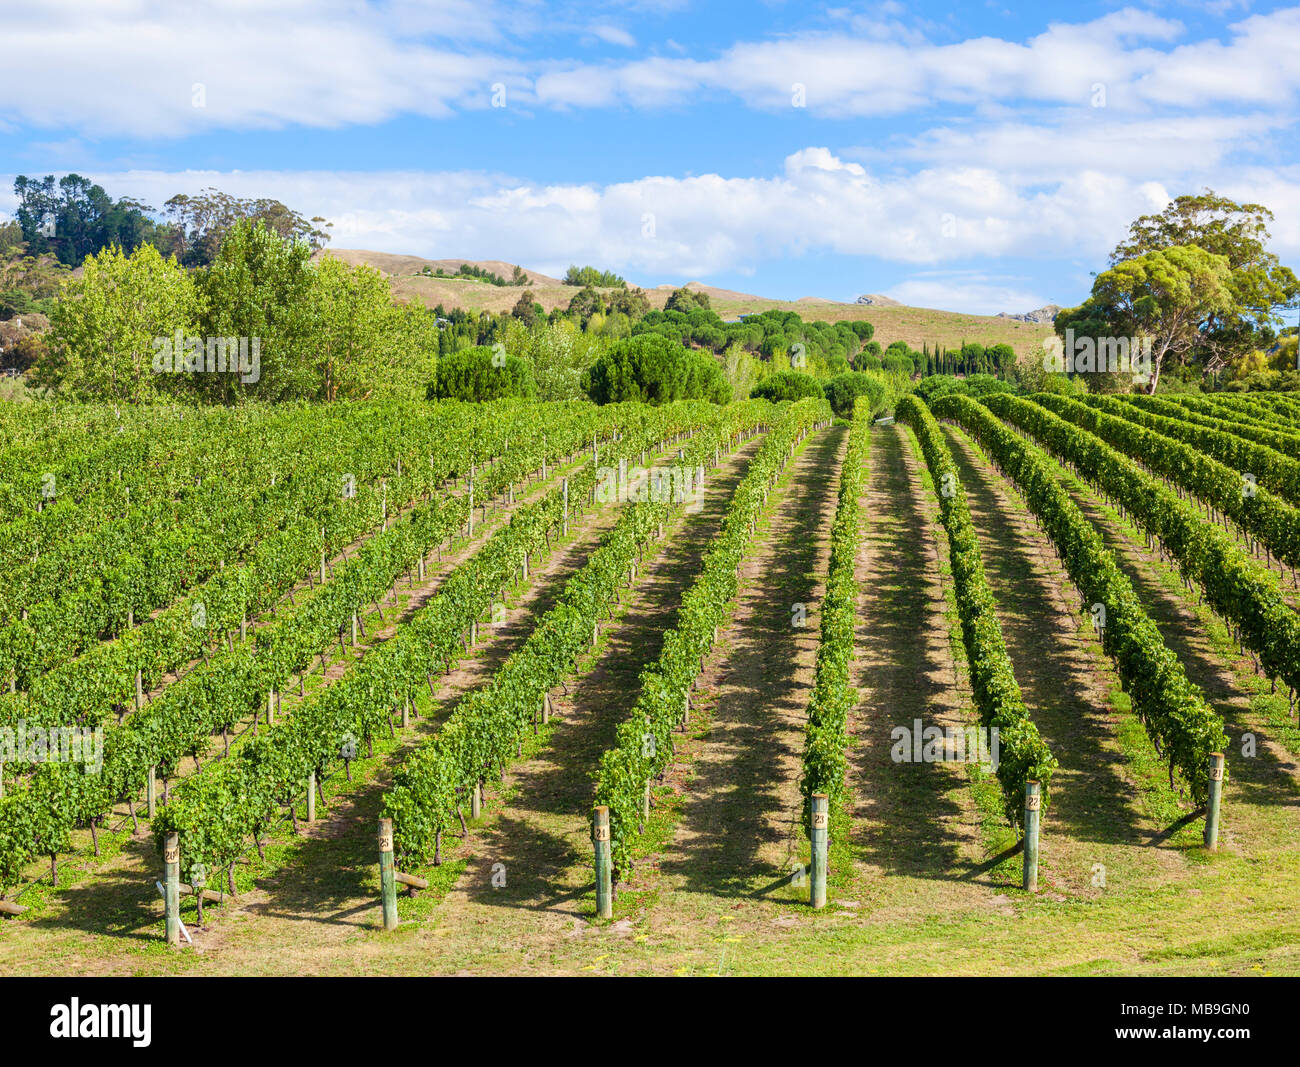 La nouvelle zelande Hawkes Bay nouvelle zélande grappes de raisin sur des vignes en lignes dans un vignoble à Hawkes Bay Rotorua Nouvelle zélande Ile du Nord NOUVELLE ZÉLANDE Banque D'Images